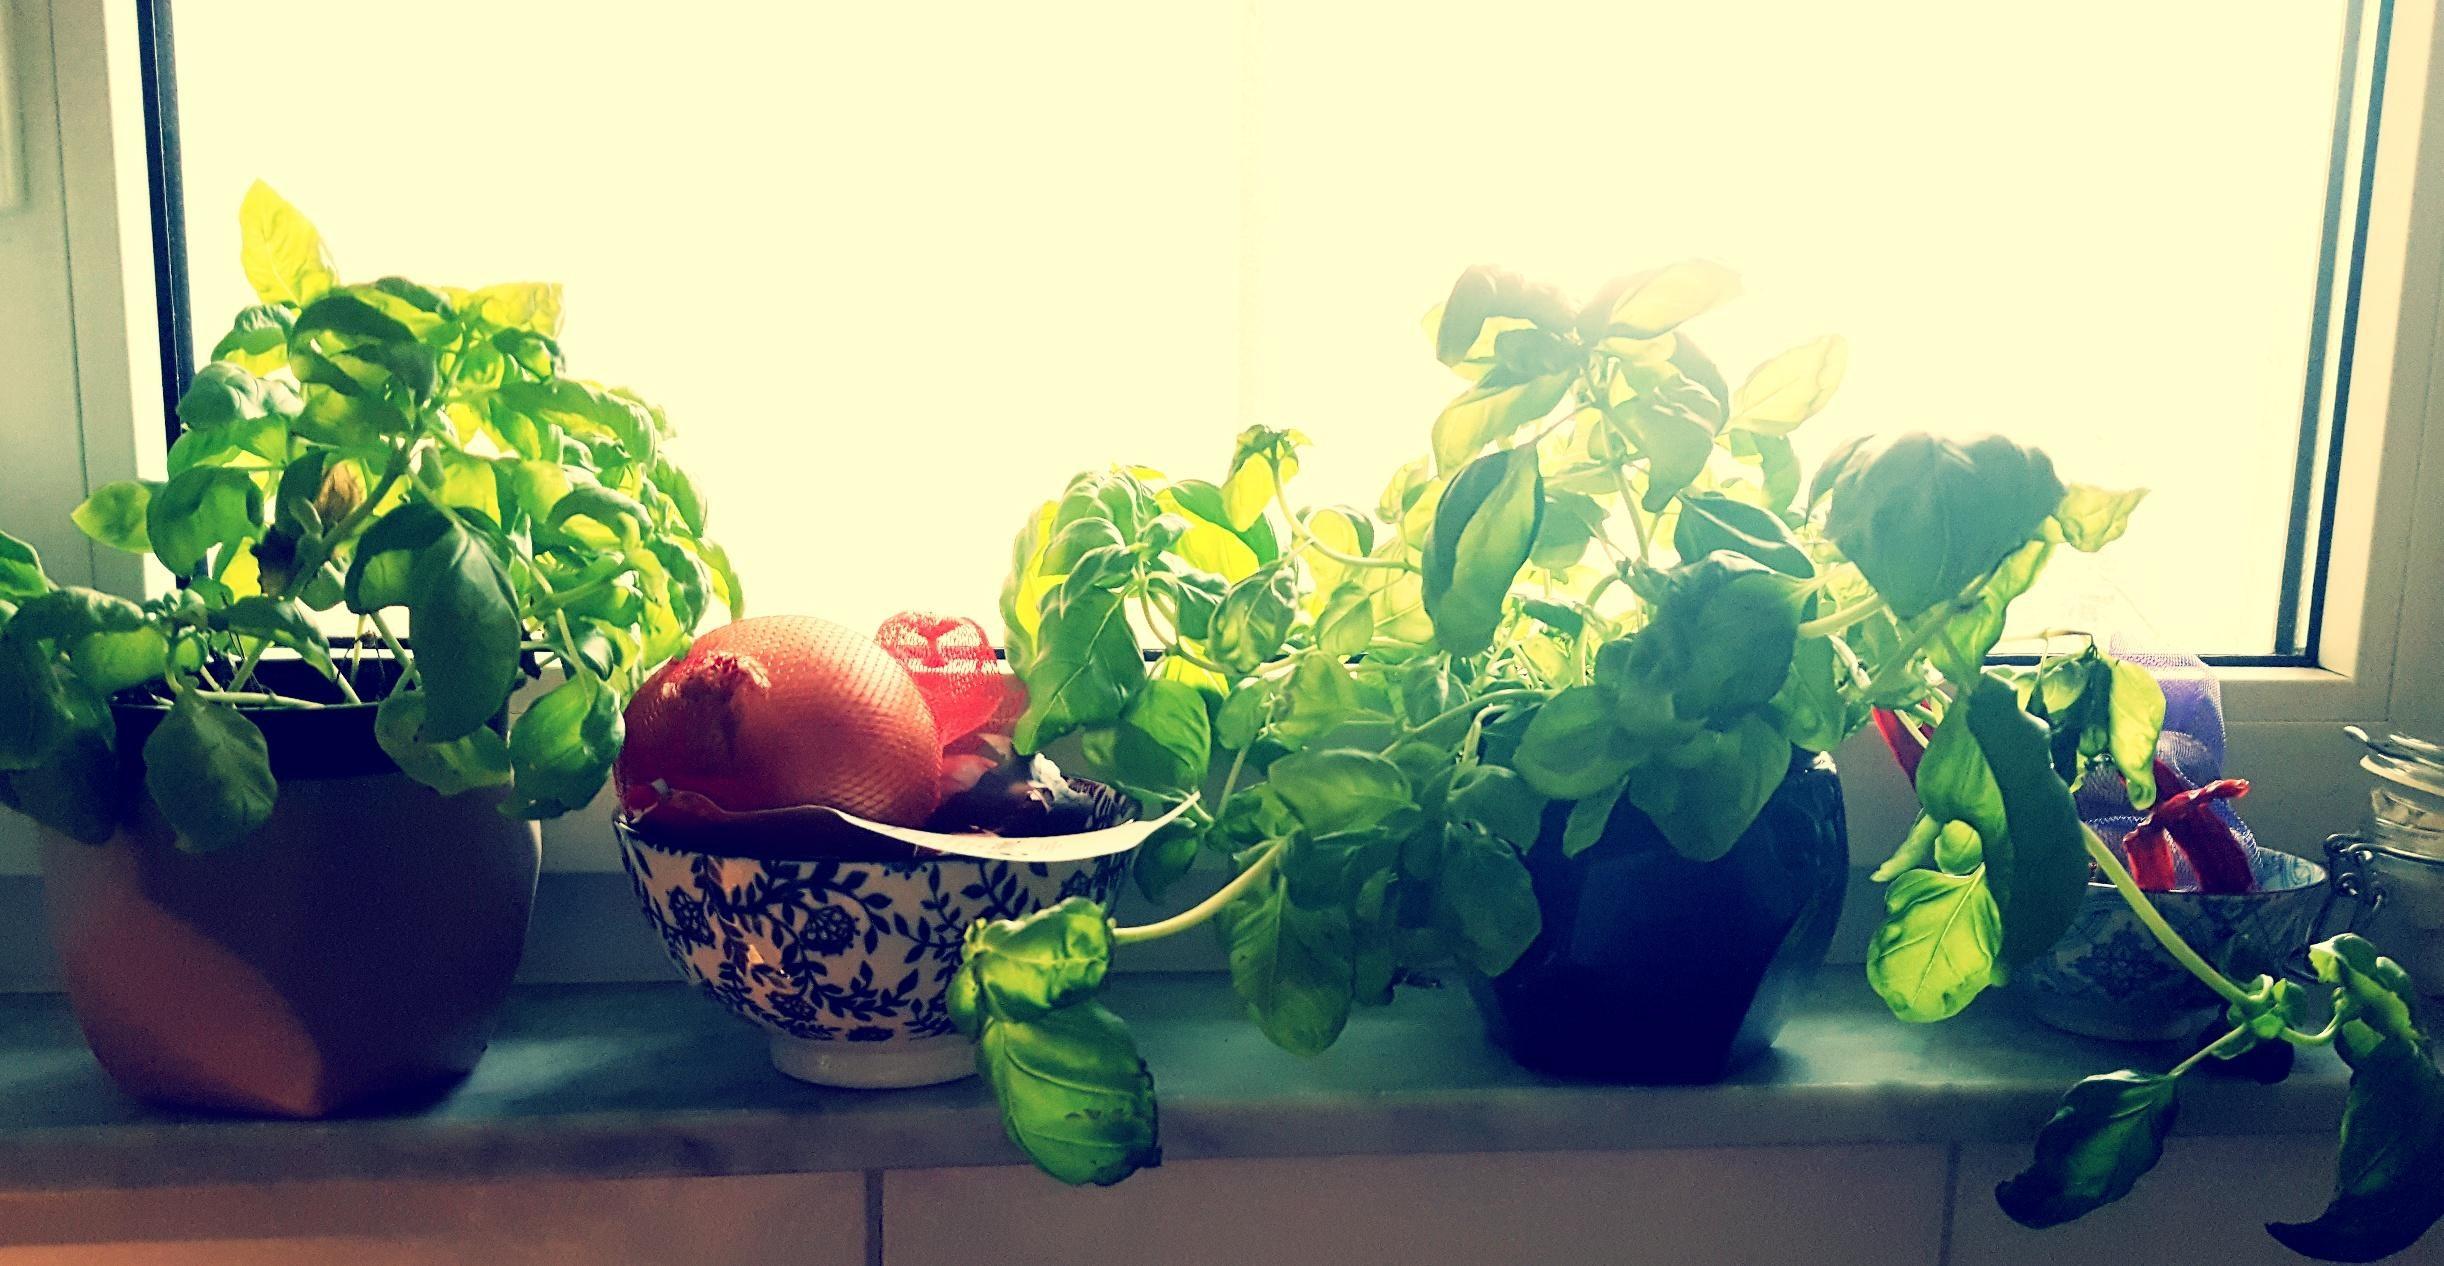 Meine kleine Kräuterecke. Das leuchtende Grün ist wundervoll in der Küche. #Küche #Kräuter #Urlaubsfeeling